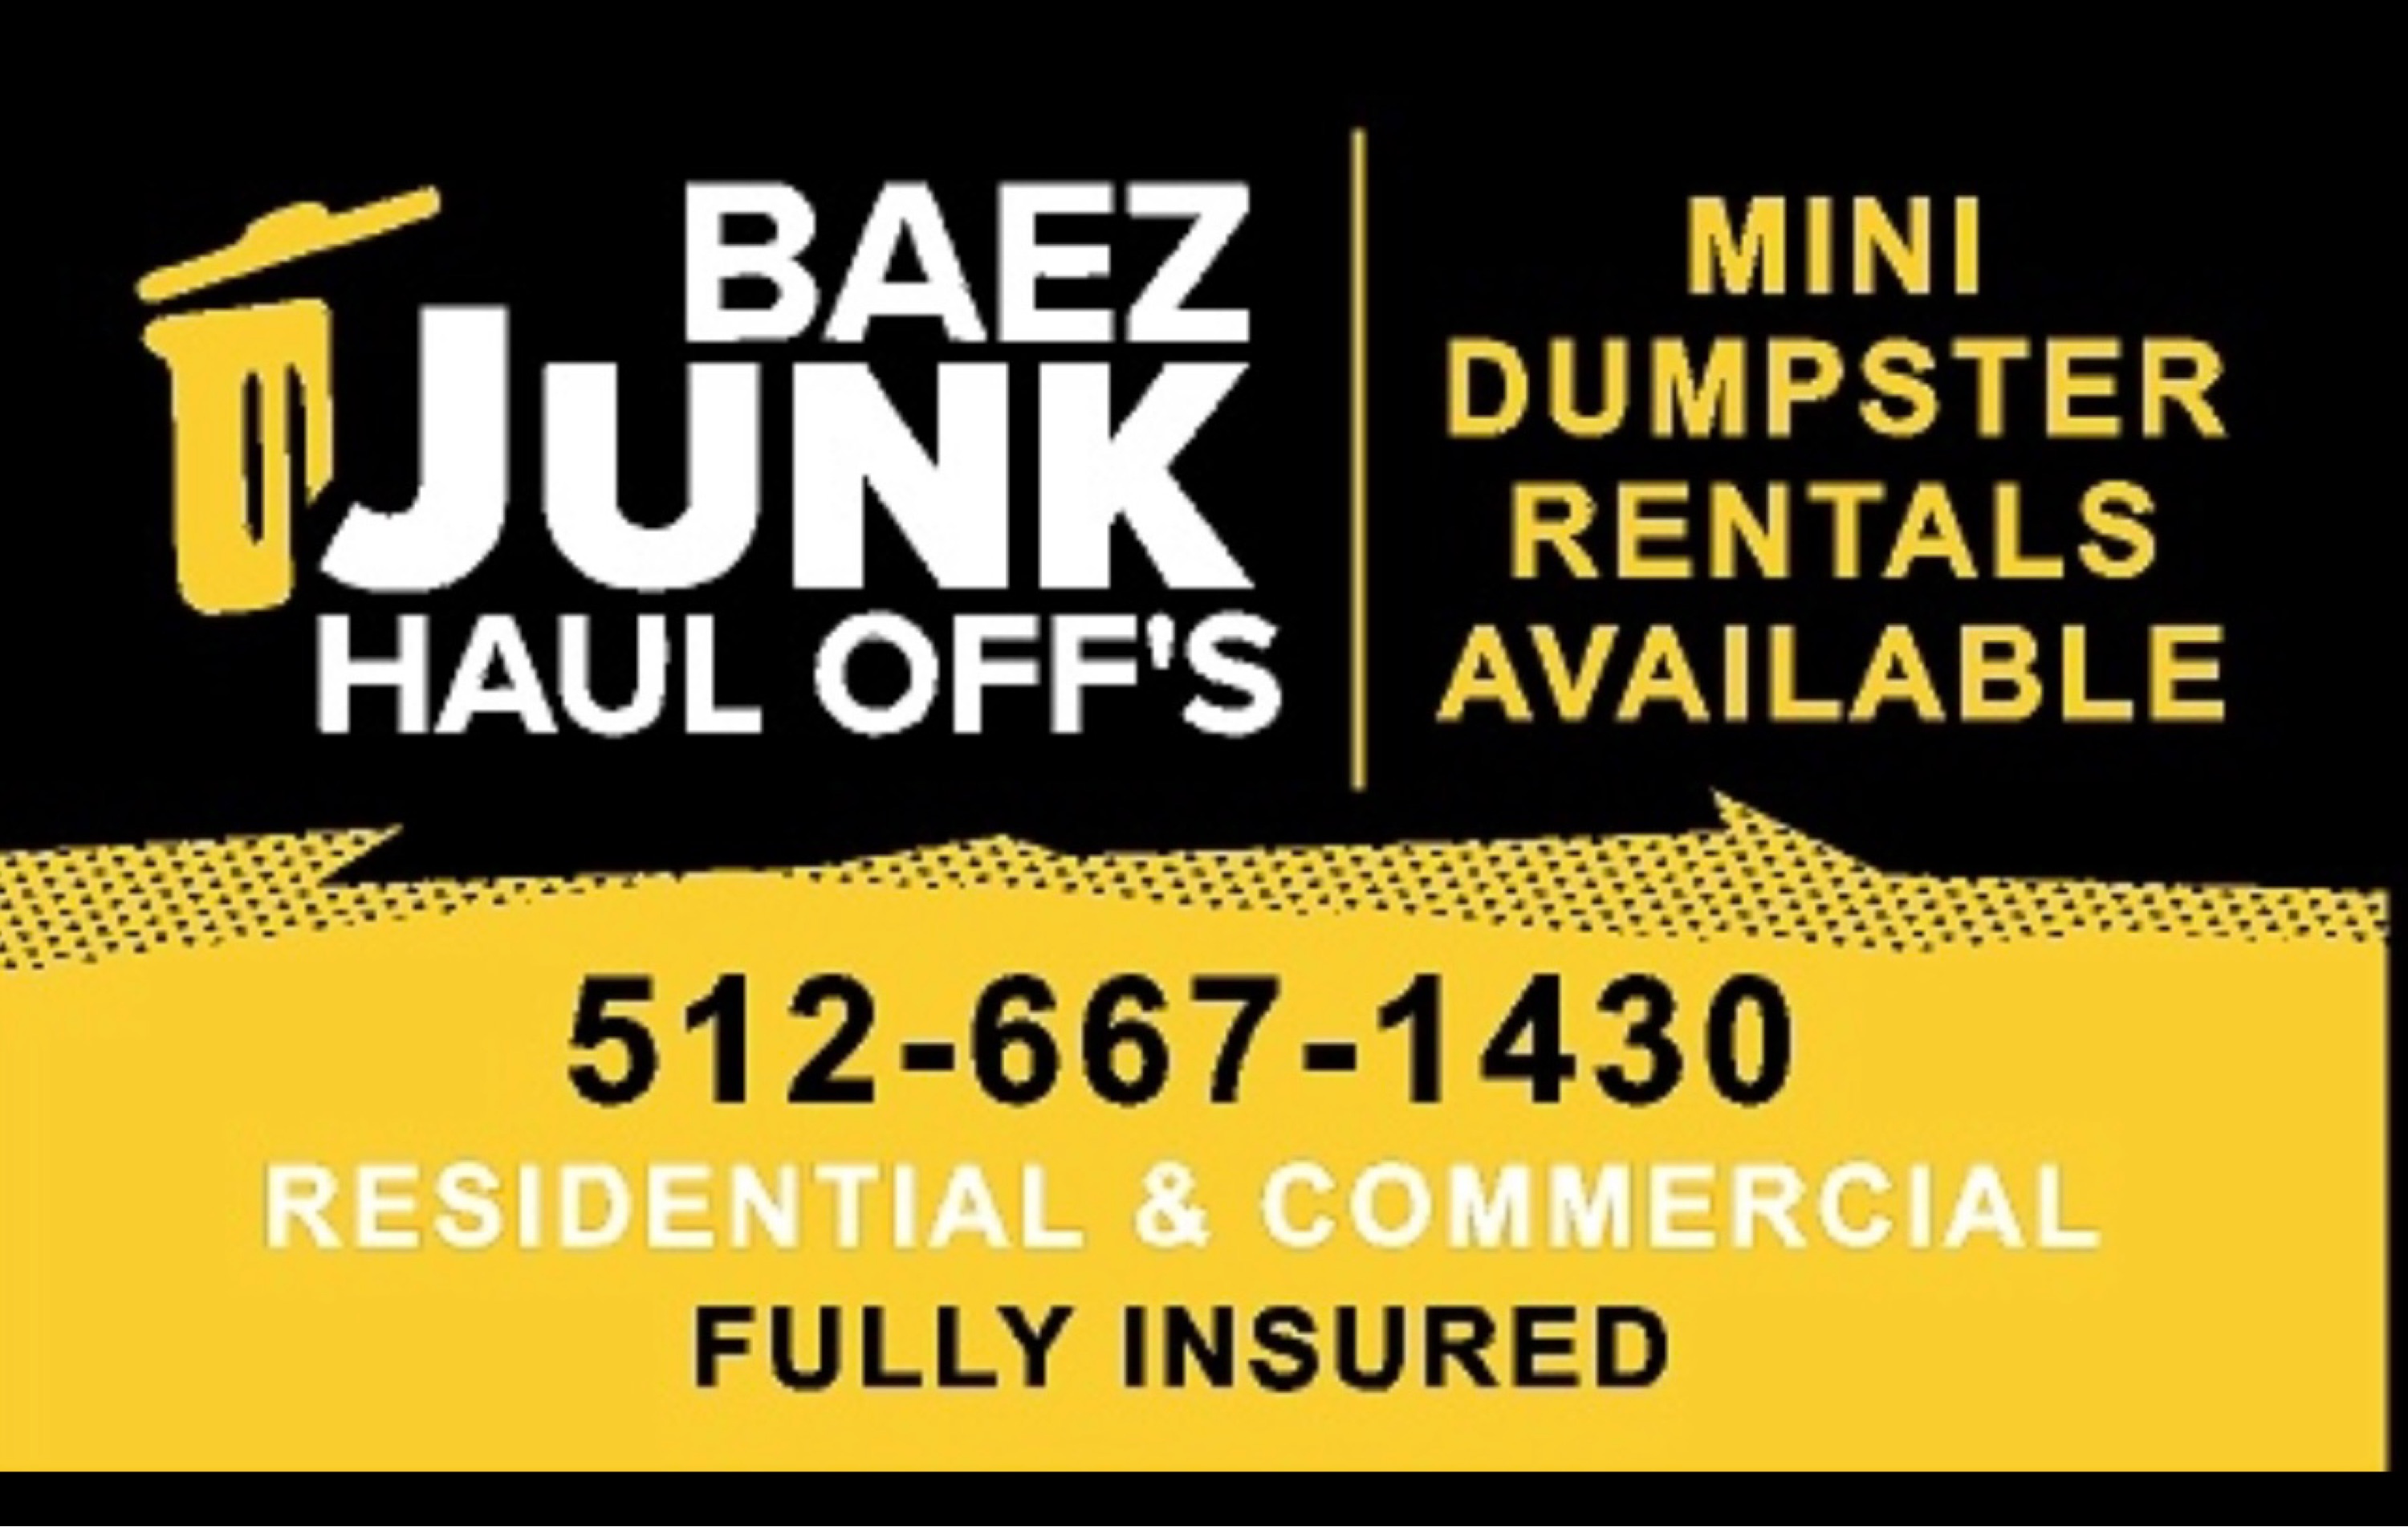 Baez Junk Haul Offs Logo